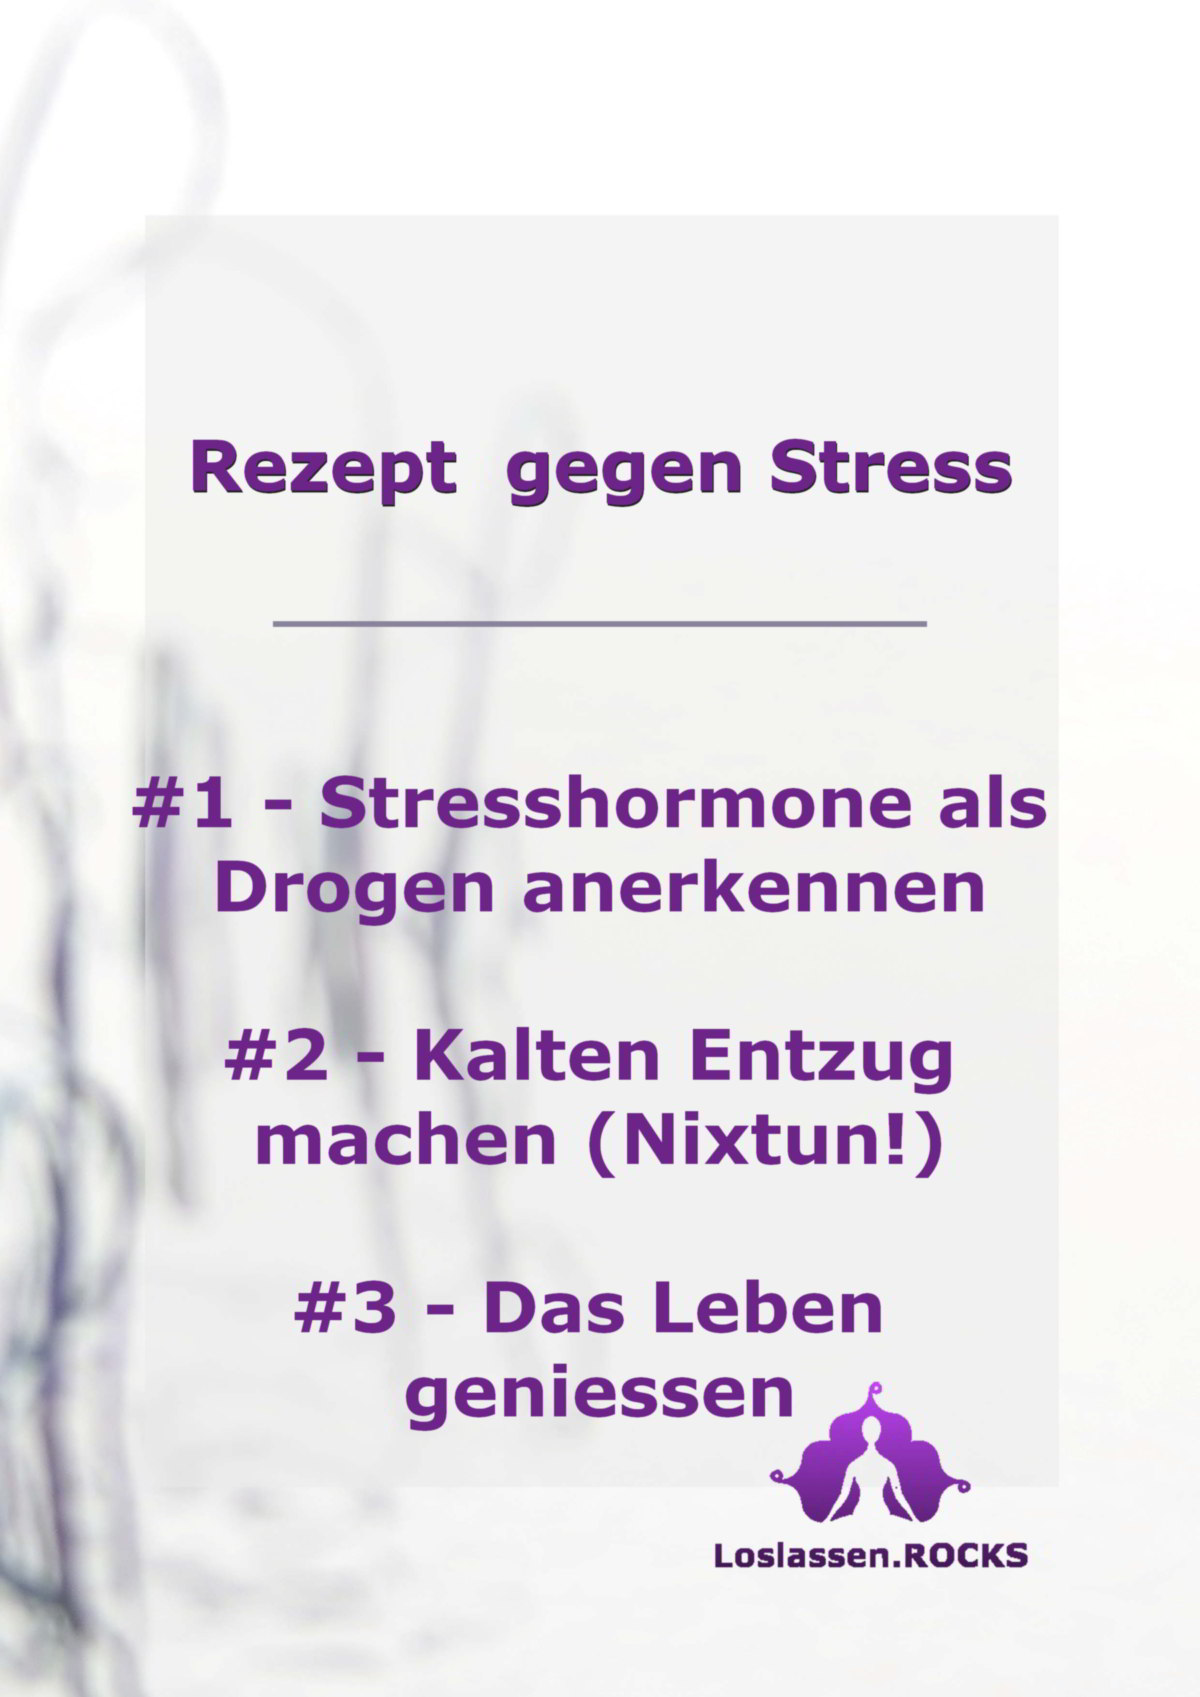 Rezept gegen Stress #1 - Stresshormone als Drogen anerkennen #2 - Kalten Entzug machen (Nixtun!) #3 - Das Leben geniessen